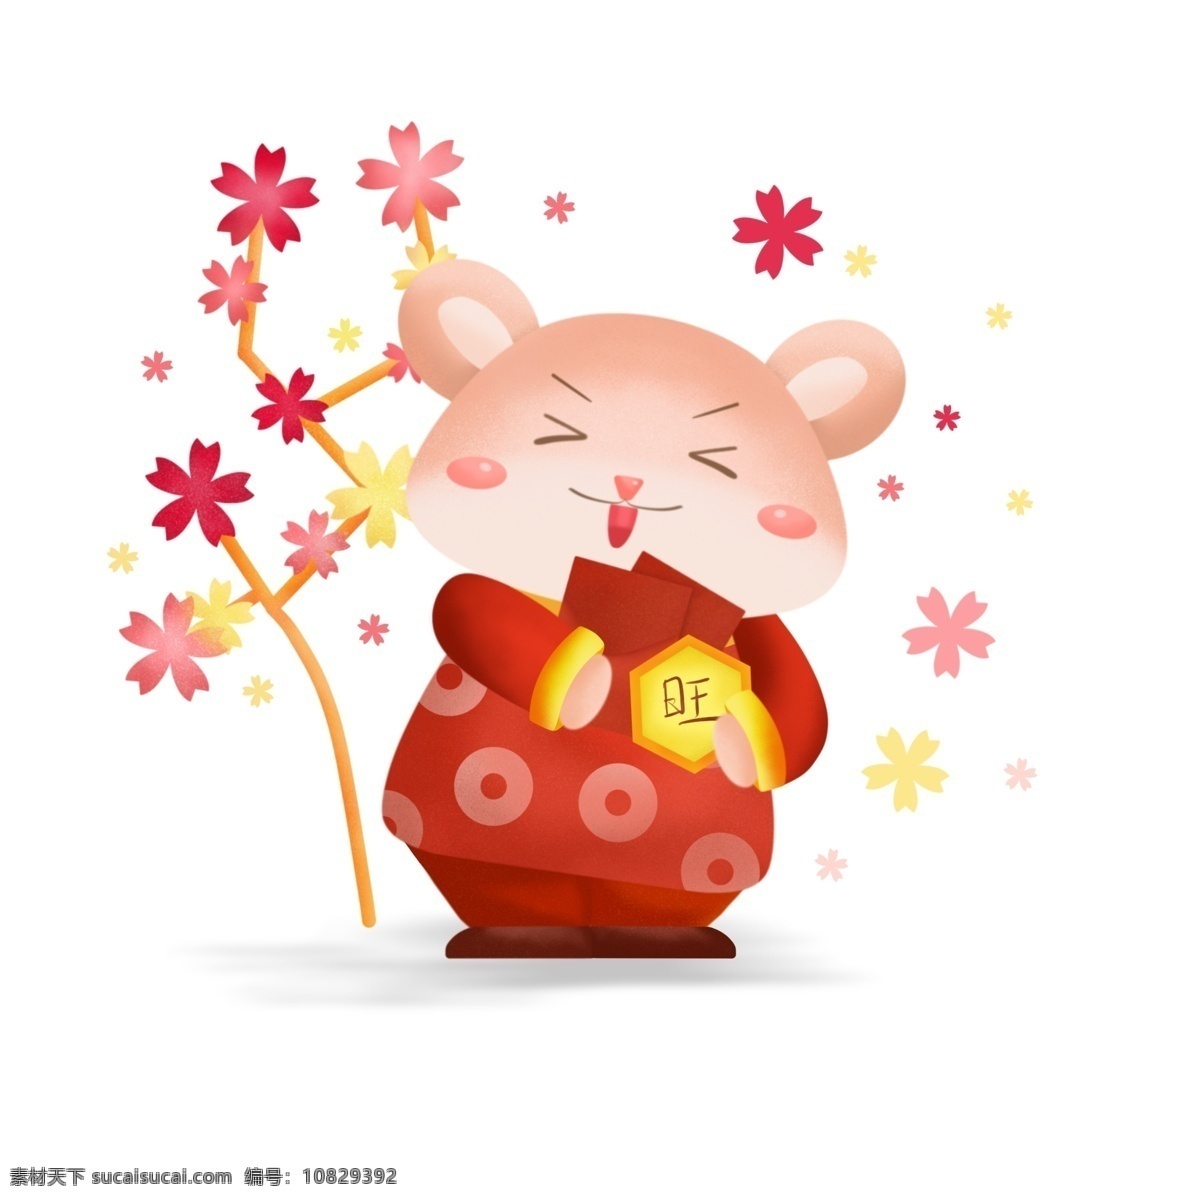 2020 鼠年 贺岁 可爱 卡通 鼠 抱 红包 春节 卡通鼠 金牌 花树 装饰图案